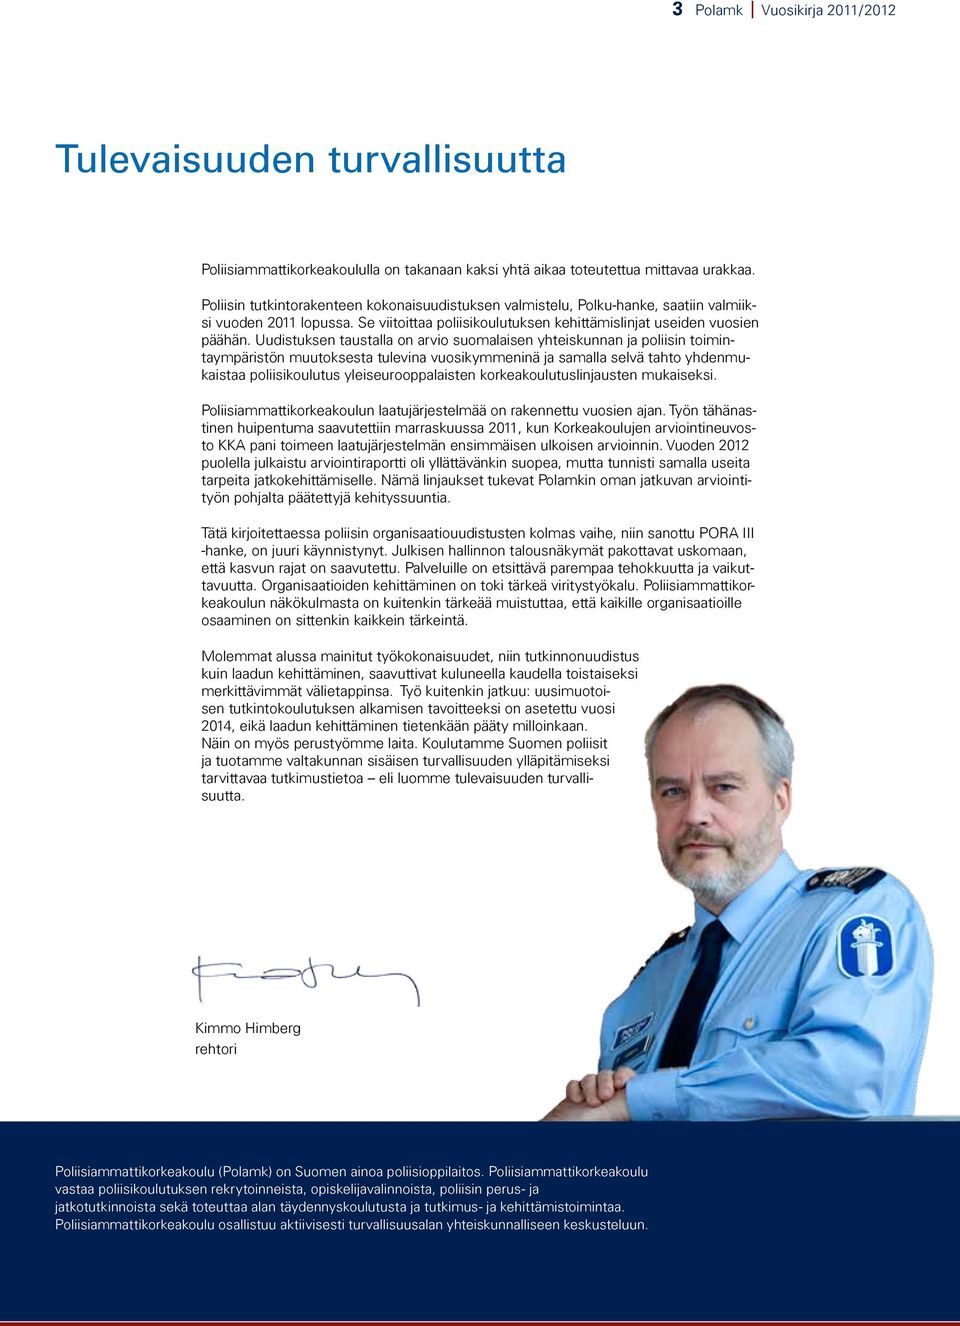 Uudistuksen taustalla on arvio suomalaisen yhteiskunnan ja poliisin toimintaympäristön muutoksesta tulevina vuosikymmeninä ja samalla selvä tahto yhdenmukaistaa poliisikoulutus yleiseurooppalaisten